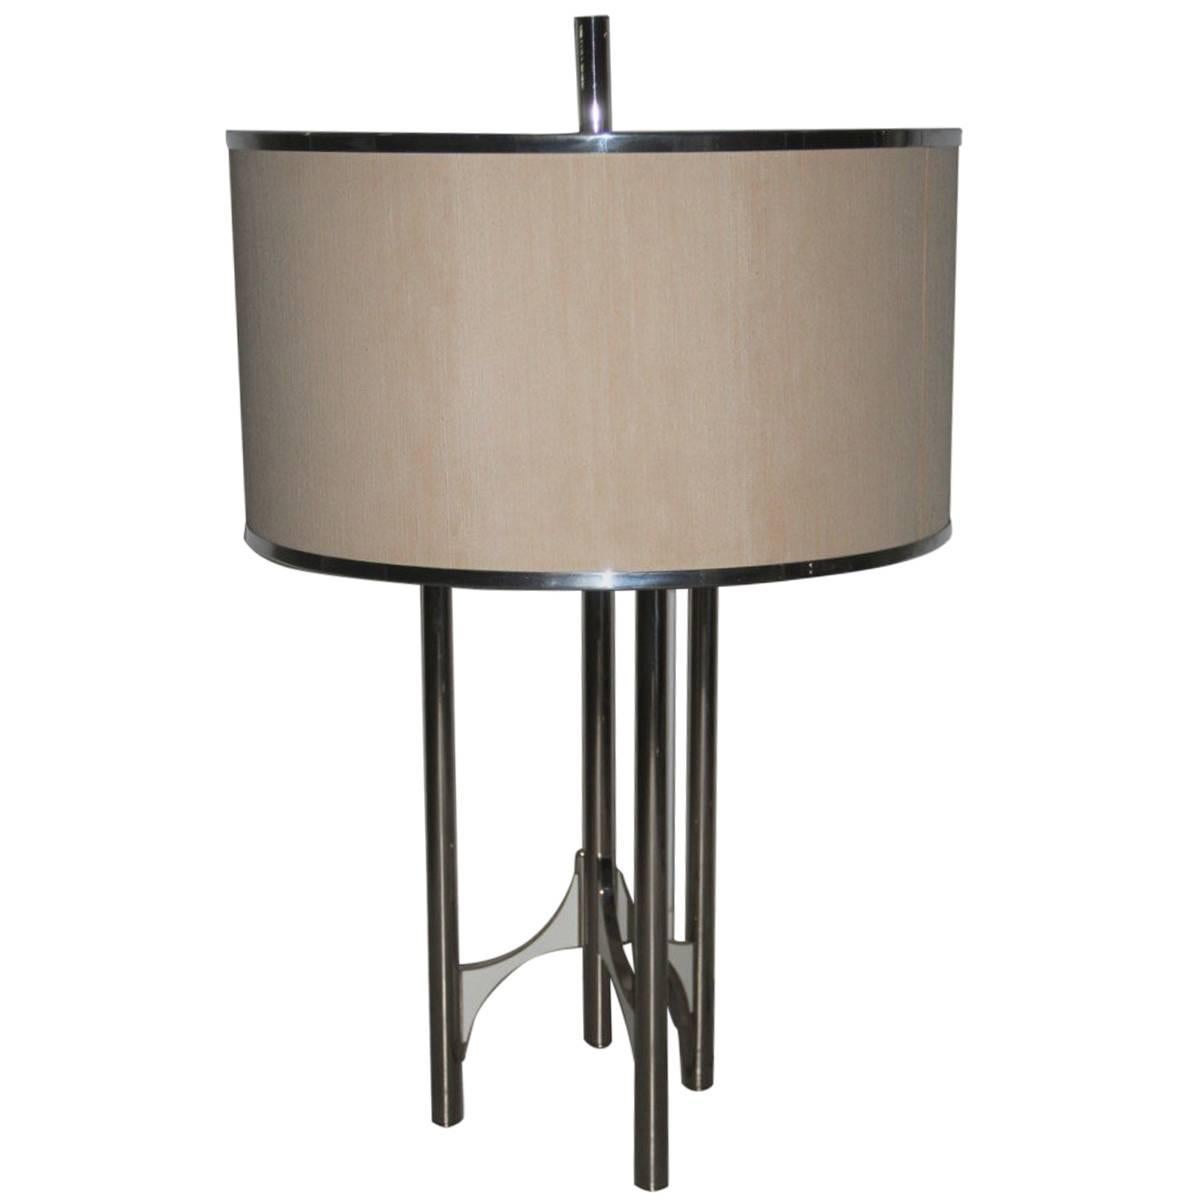 Minimal Chic Italian Design Table Lamp Sciolari Design 1970 For Sale